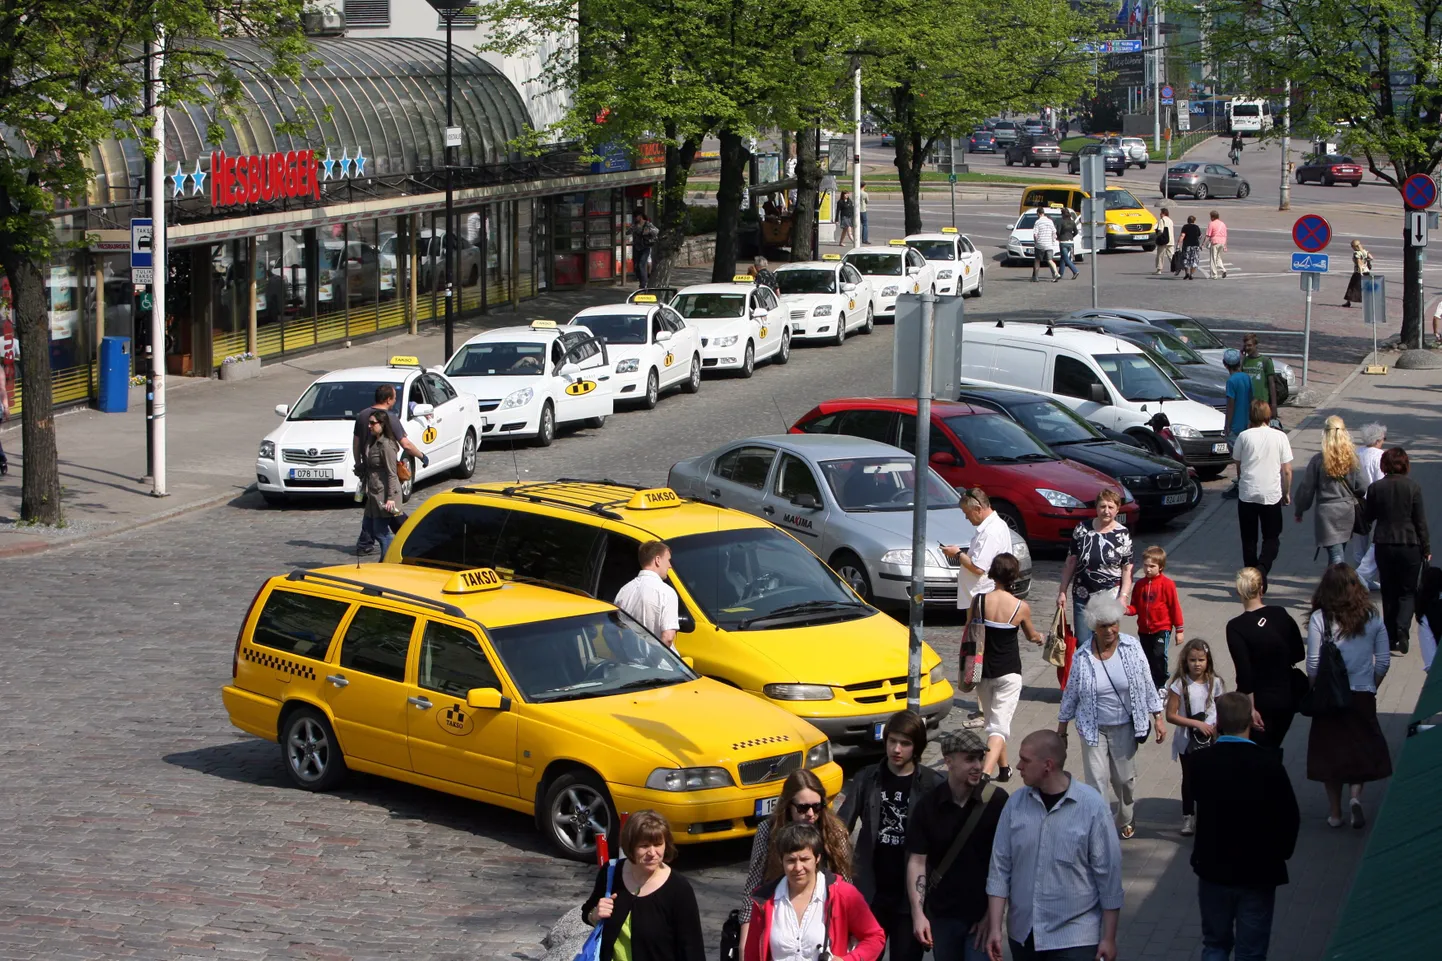 Viru tänava alguses olev liiklusmärk keelab taksodel ühel tänavapoolel peatumise ja parkimise, kuid sellest hoolimata võib taksosid seal iga päev seismas näha.